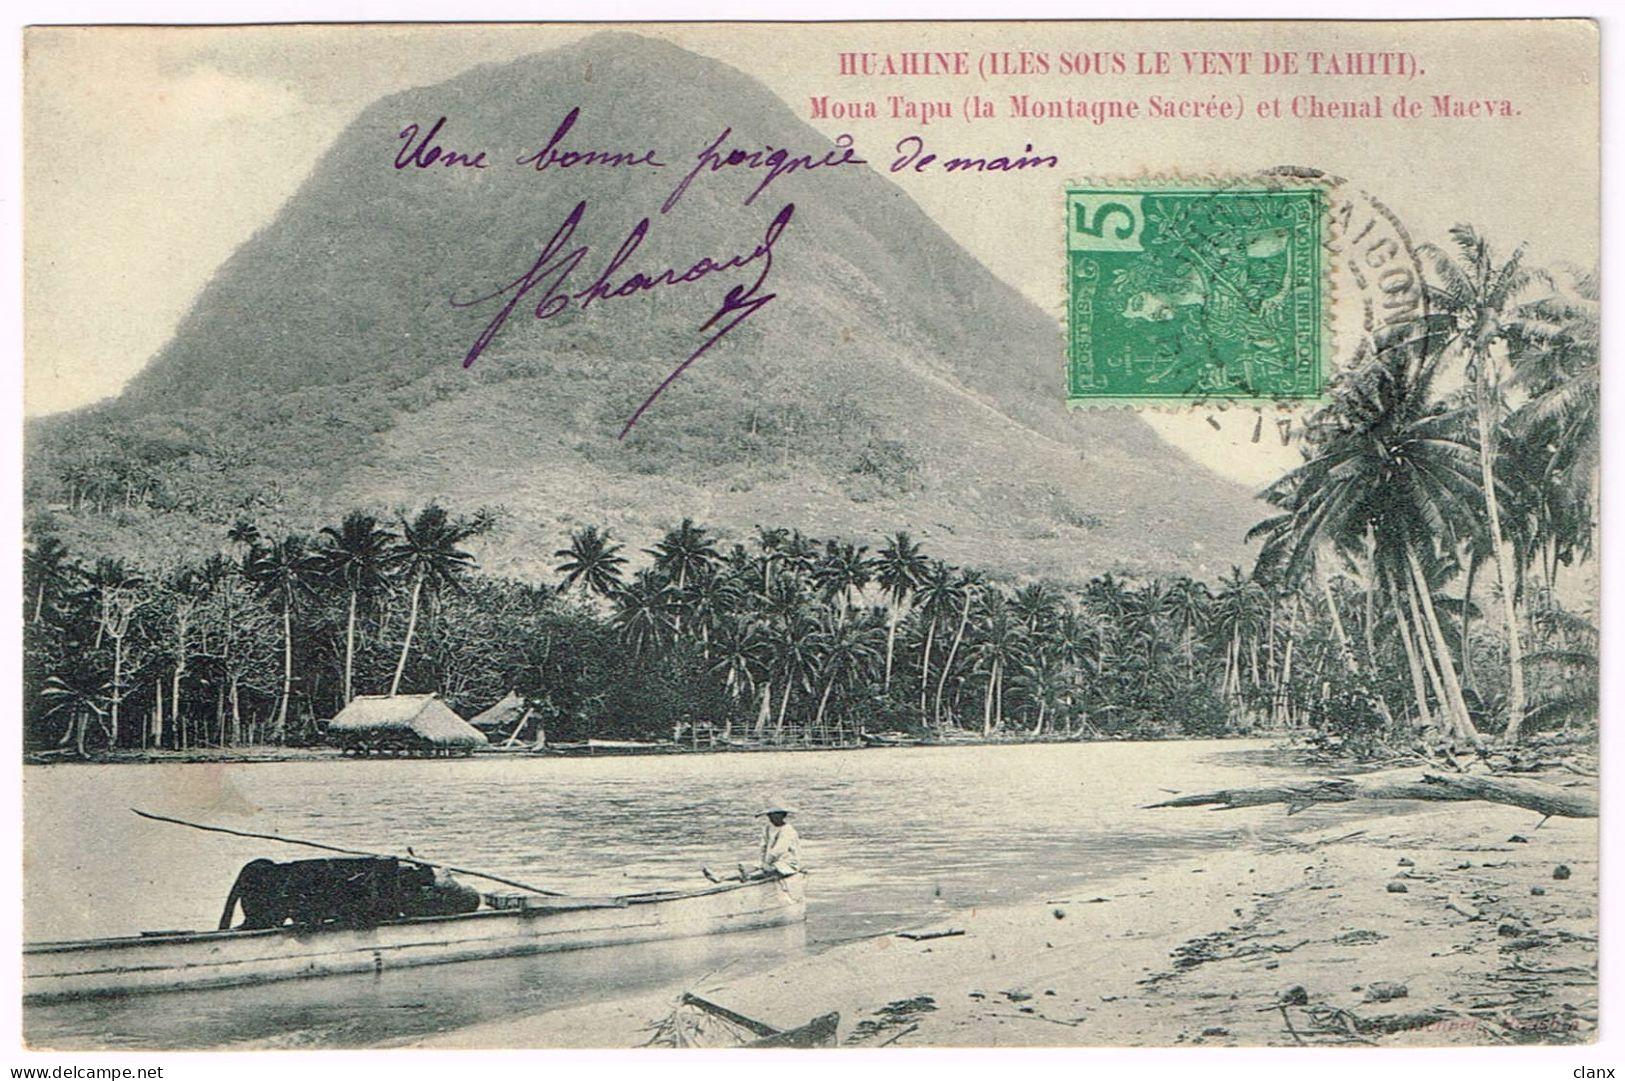 TAHITI 1907 Huahine - Mona Tapu - Polynésie Française